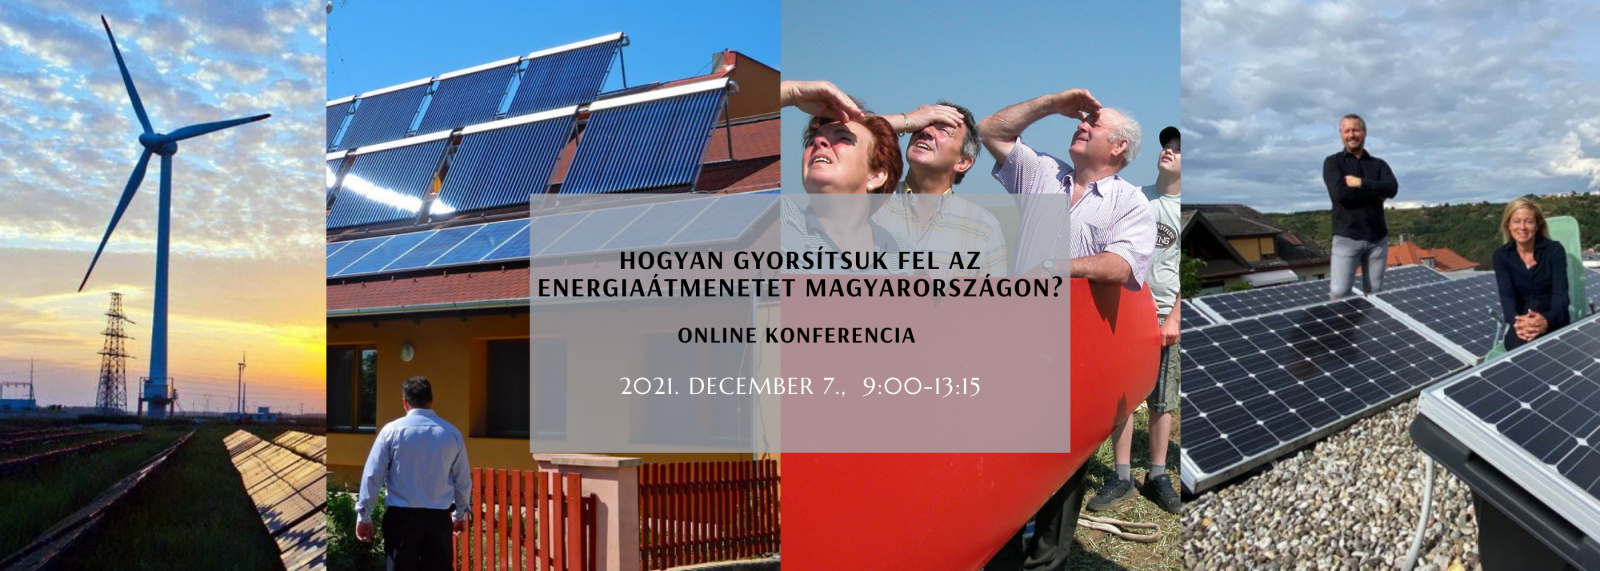 Hogyan gyorsítsuk az energiaátmenetet Magyarországon? Online konferencia anyagai, 2021. december 7.